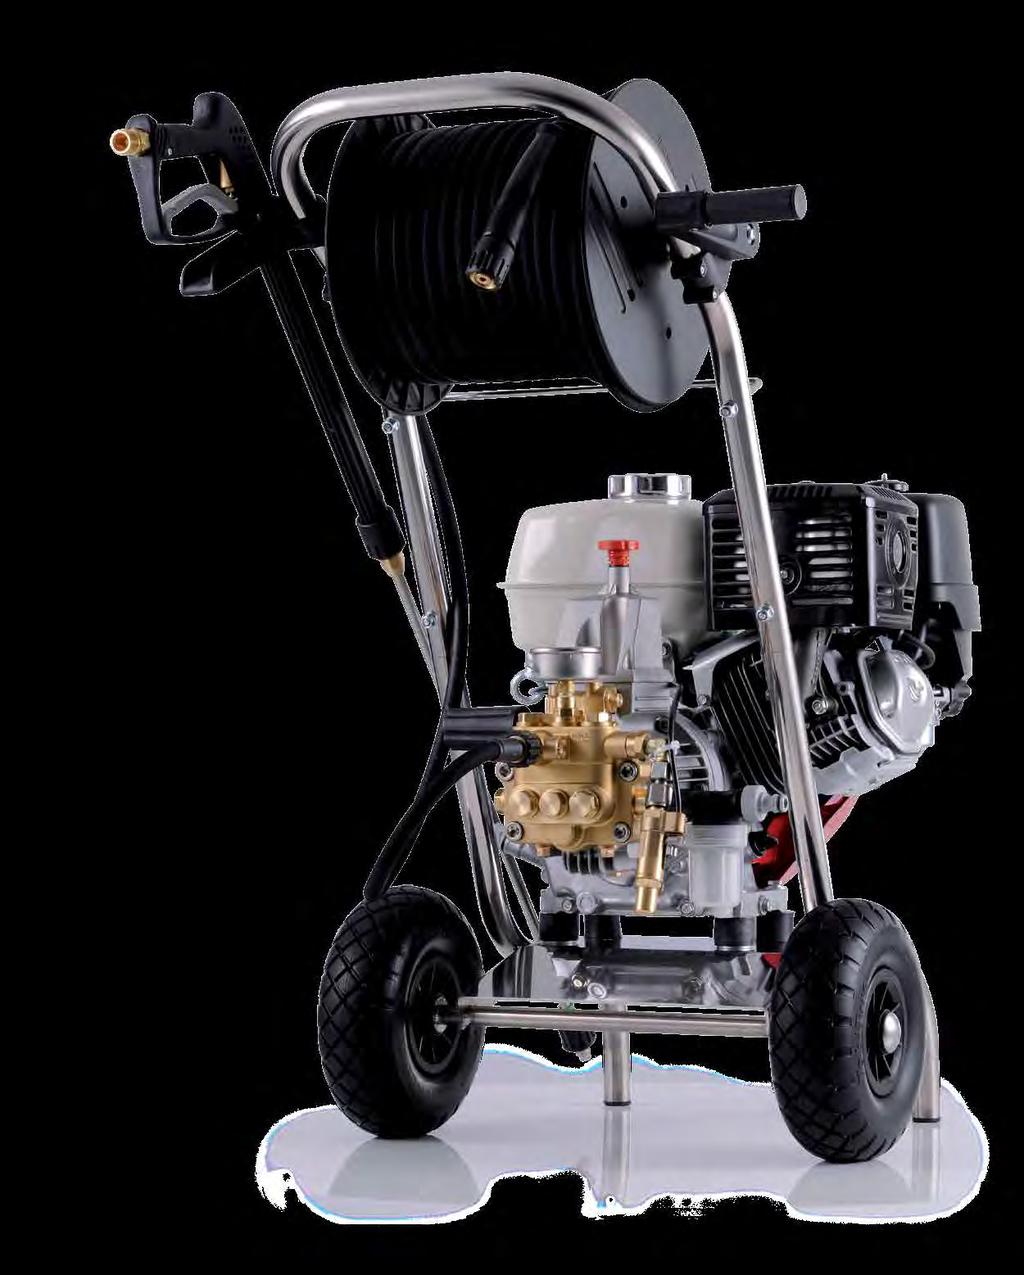 Honda s jednoduchým servisem Regulace otáček motoru (pro č. výr. 41.173, 41.